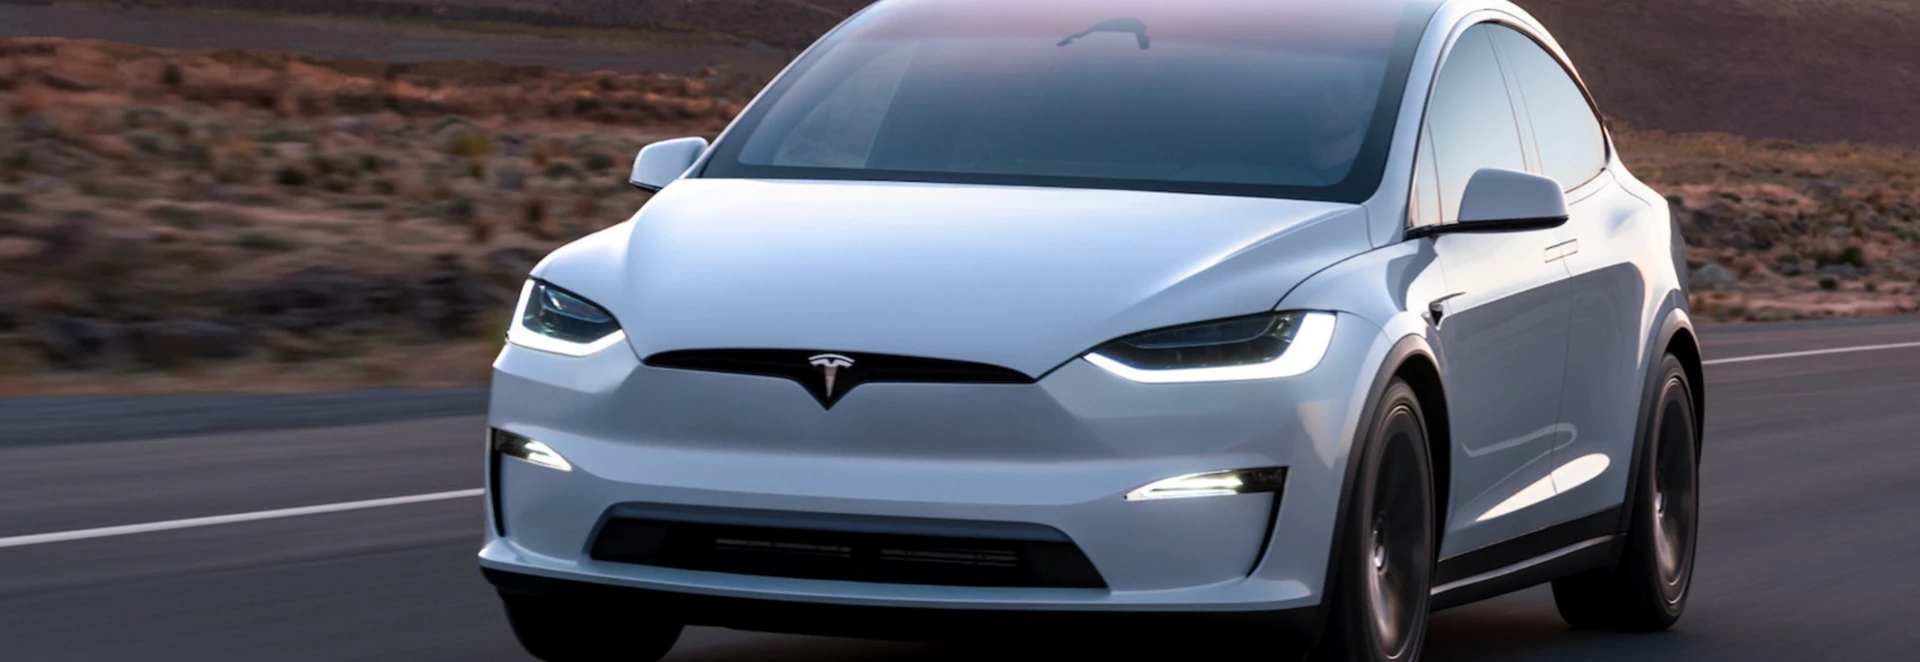 Tesla Model X Prices